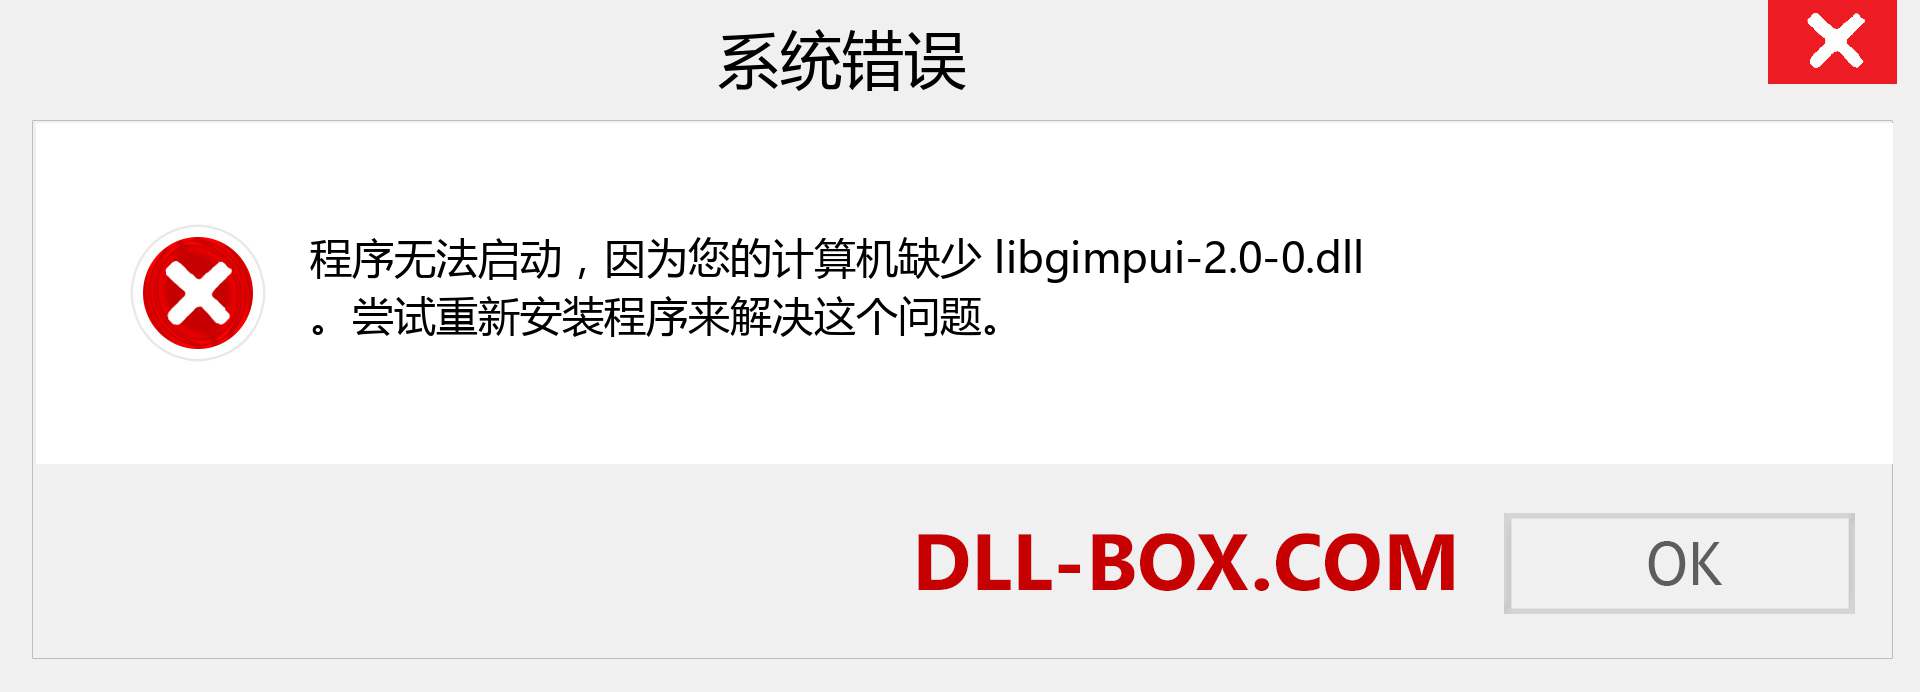 libgimpui-2.0-0.dll 文件丢失？。 适用于 Windows 7、8、10 的下载 - 修复 Windows、照片、图像上的 libgimpui-2.0-0 dll 丢失错误